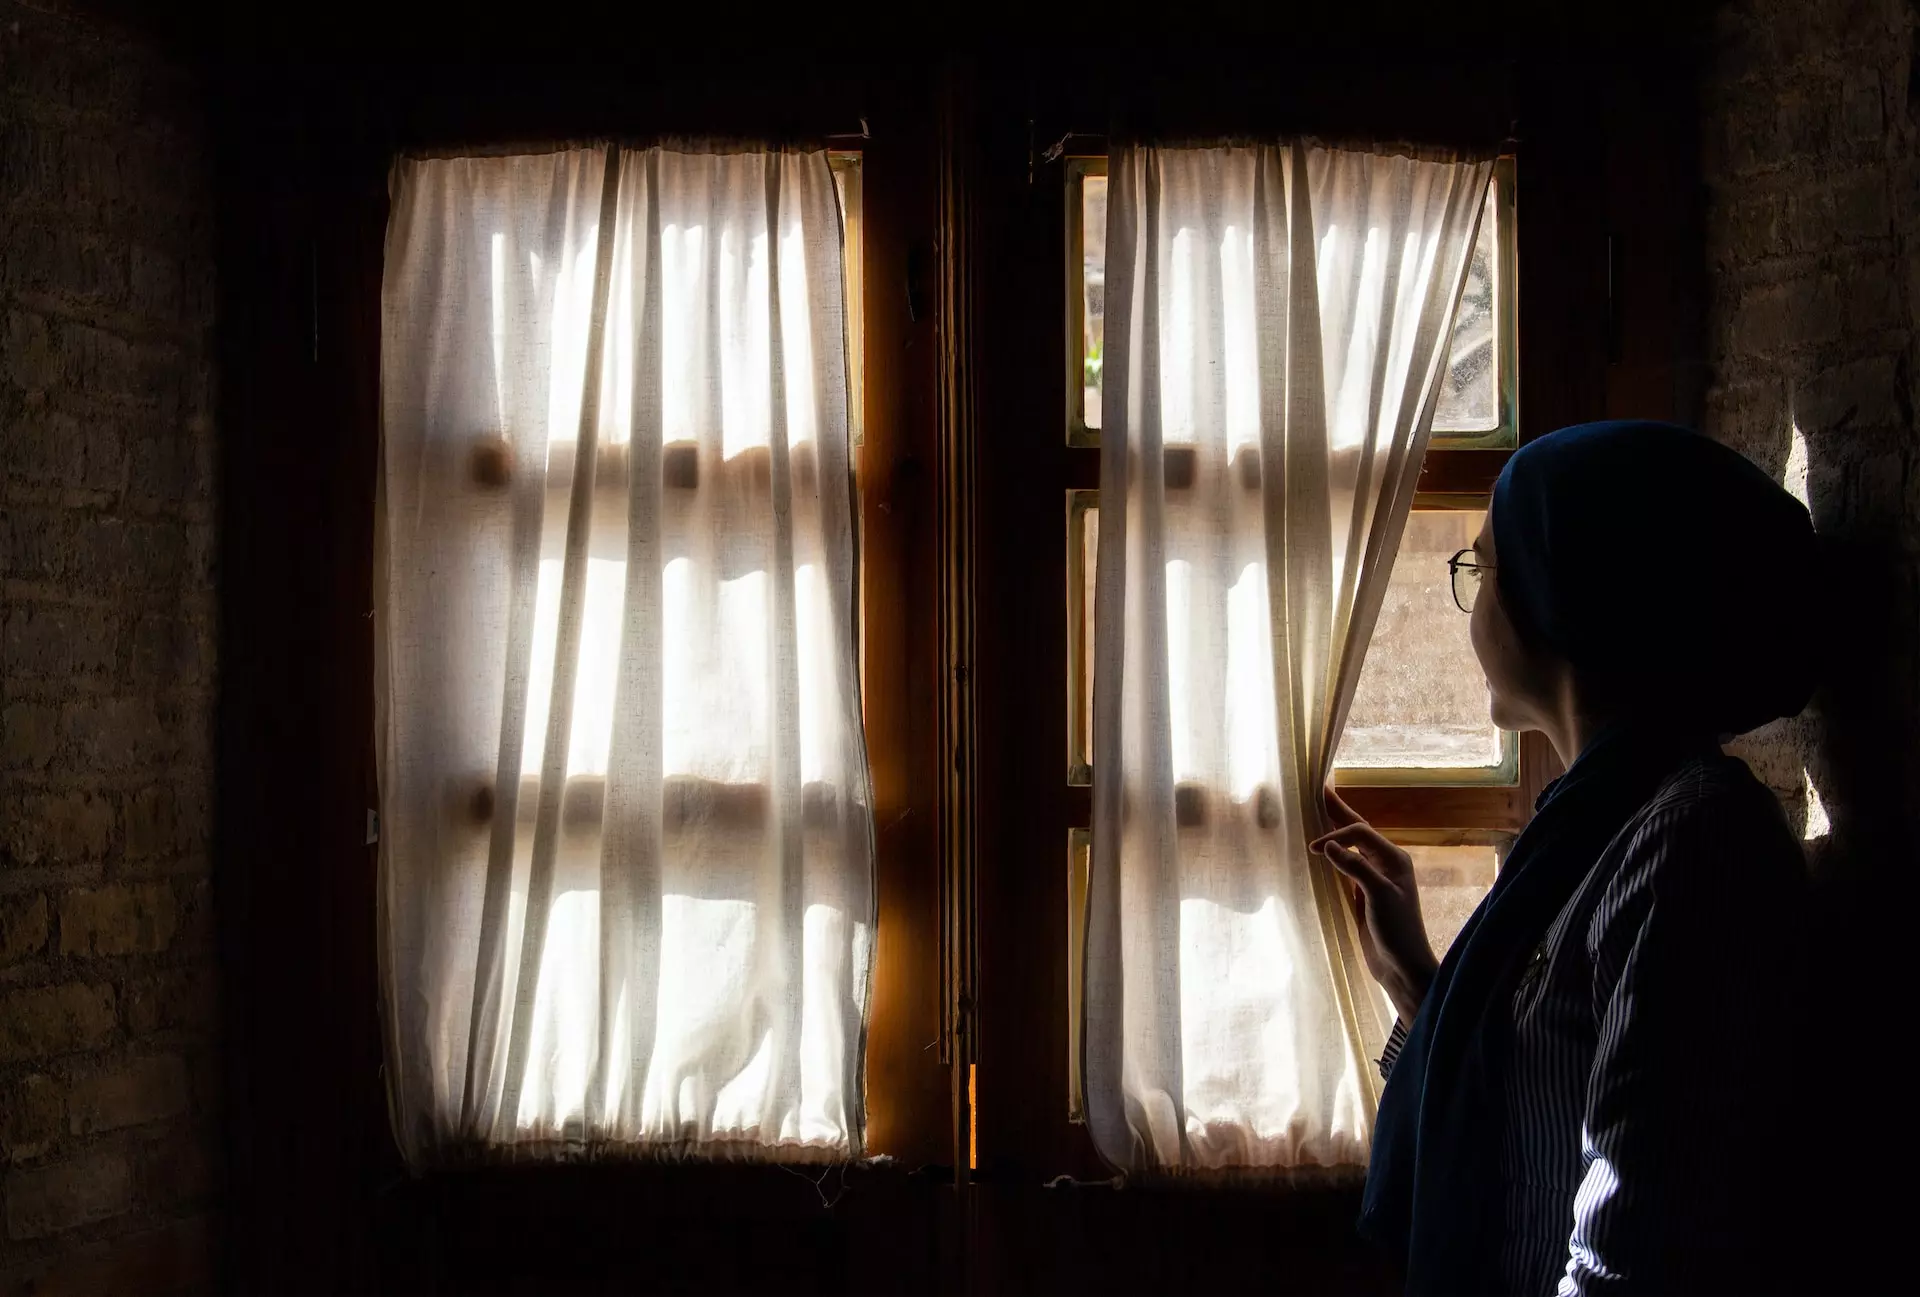 jeune femme seule regardant par la fenêtre en écartant le rideau - Photo by Mohammad Mahdi Samei on https://unsplash.com/fr/photos/femme-tenant-un-rideau-de-fenetre-YoLjryGBXTU